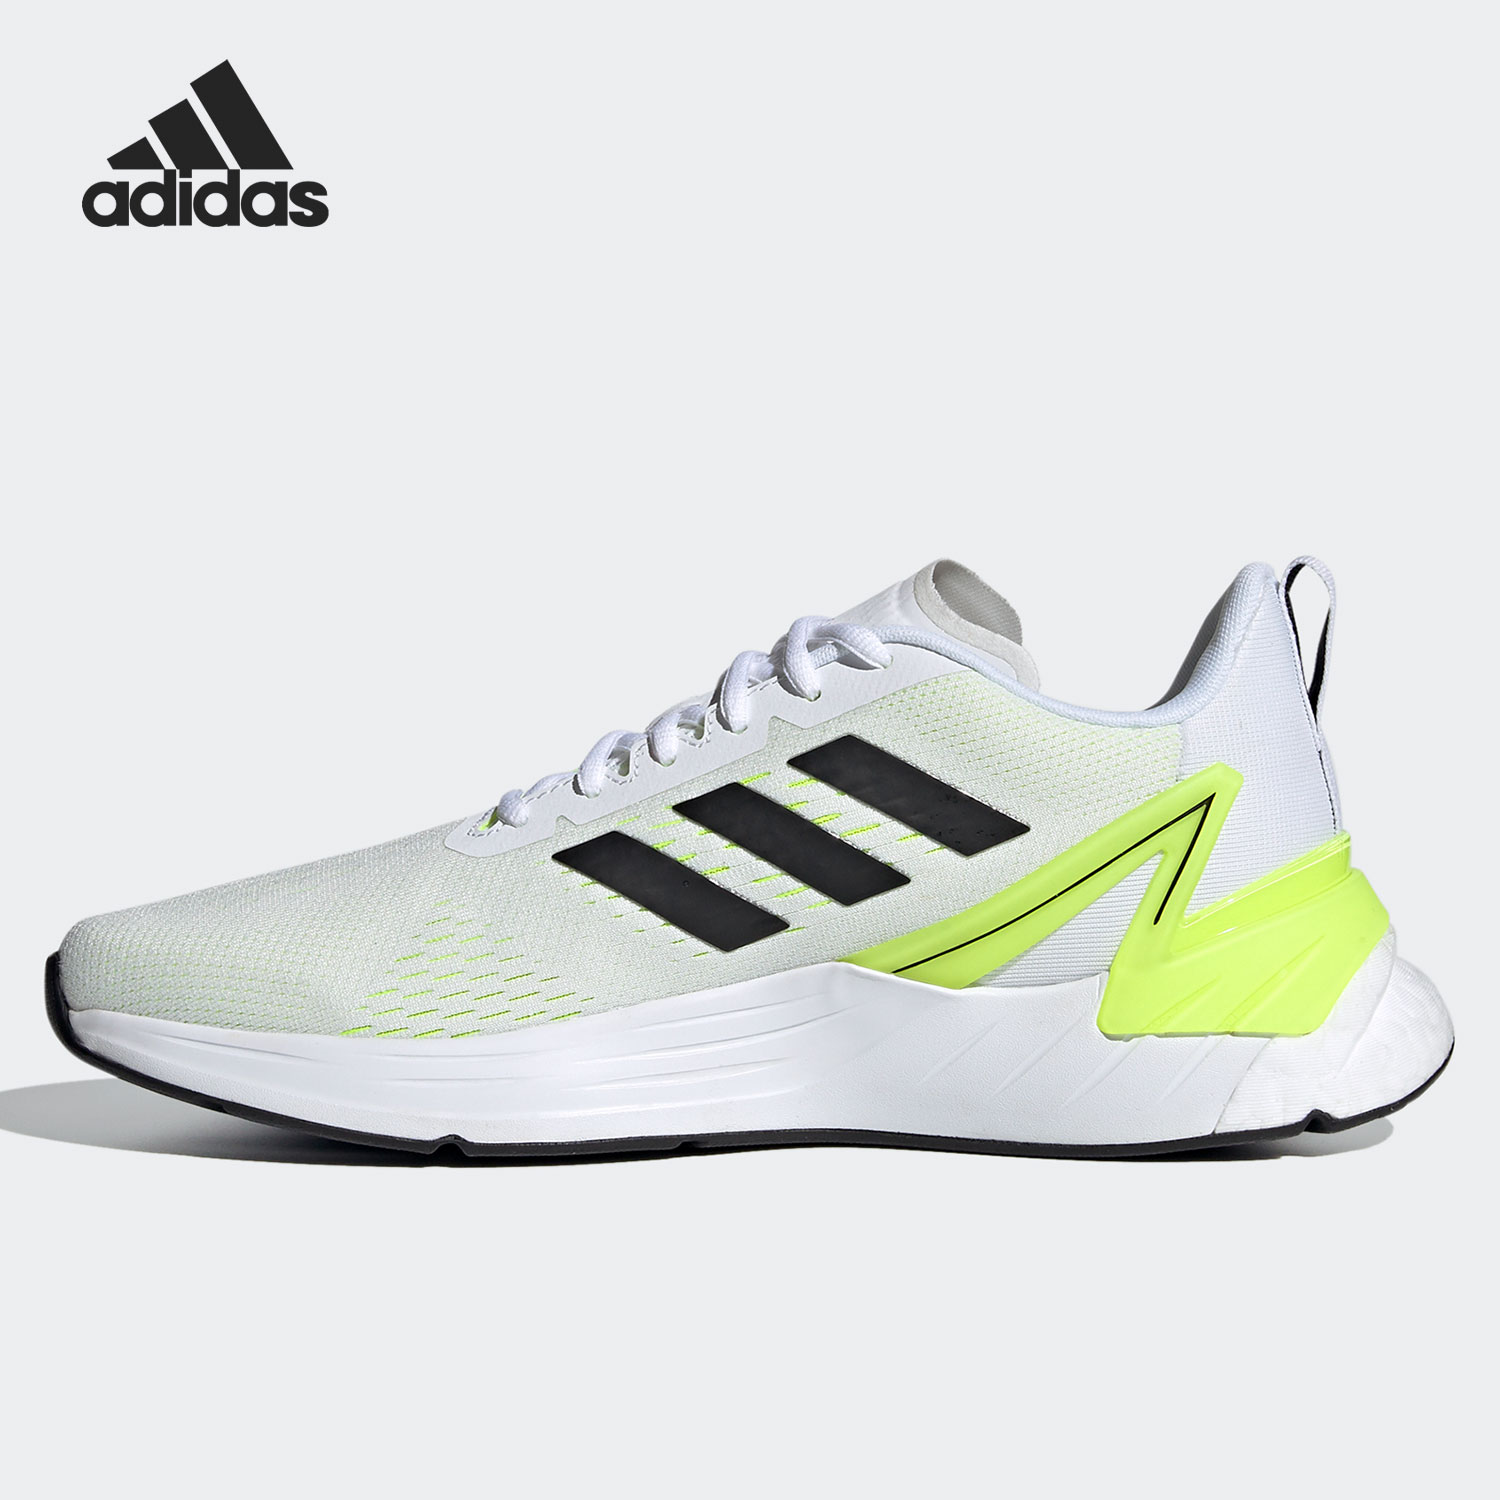 Adidas/阿迪达斯正品春季新款男子时尚休闲舒适运动跑步鞋 FY8749 - 图1